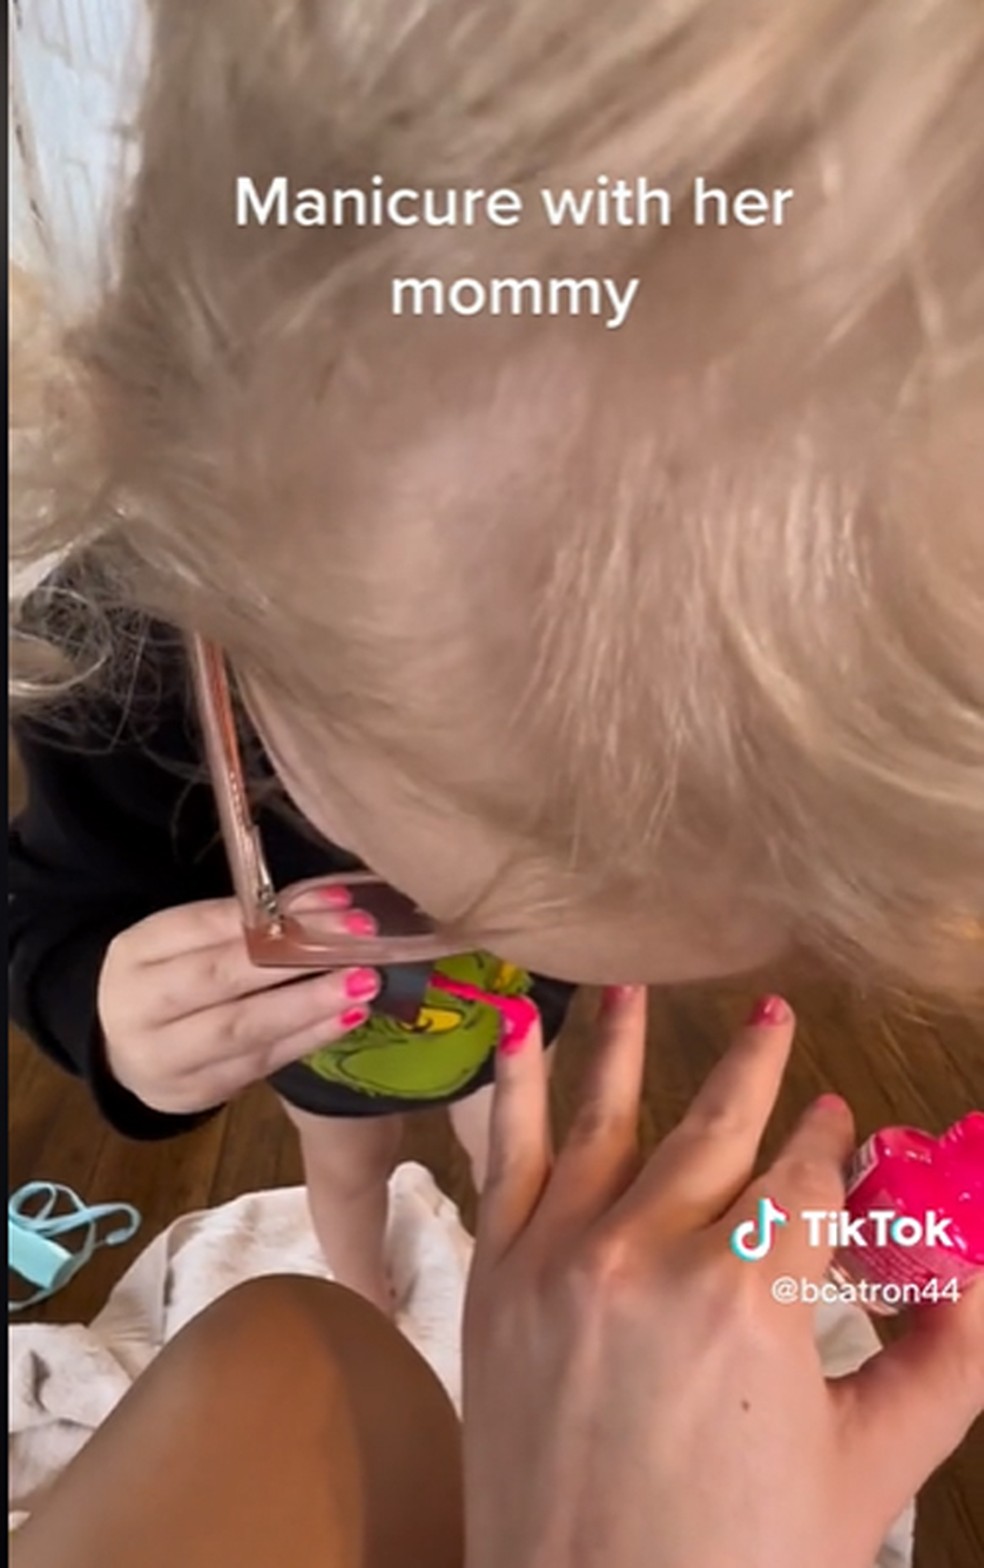 historia de mommy｜Pesquisa do TikTok